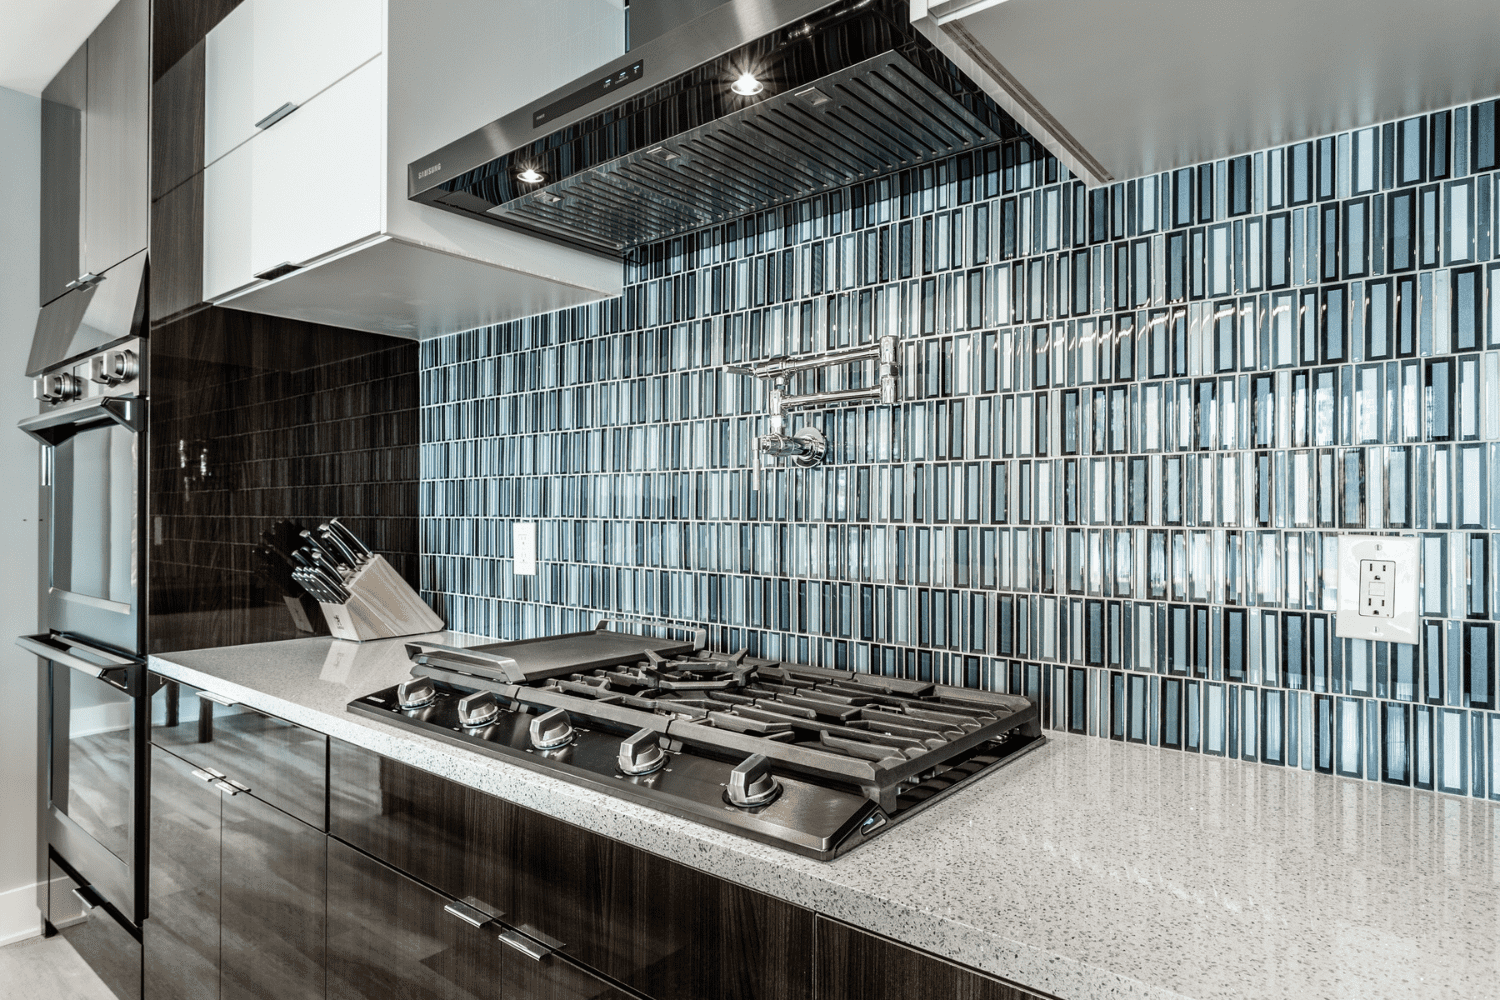 Nicholas Design Build | A blue tiled backsplash in a kitchen.